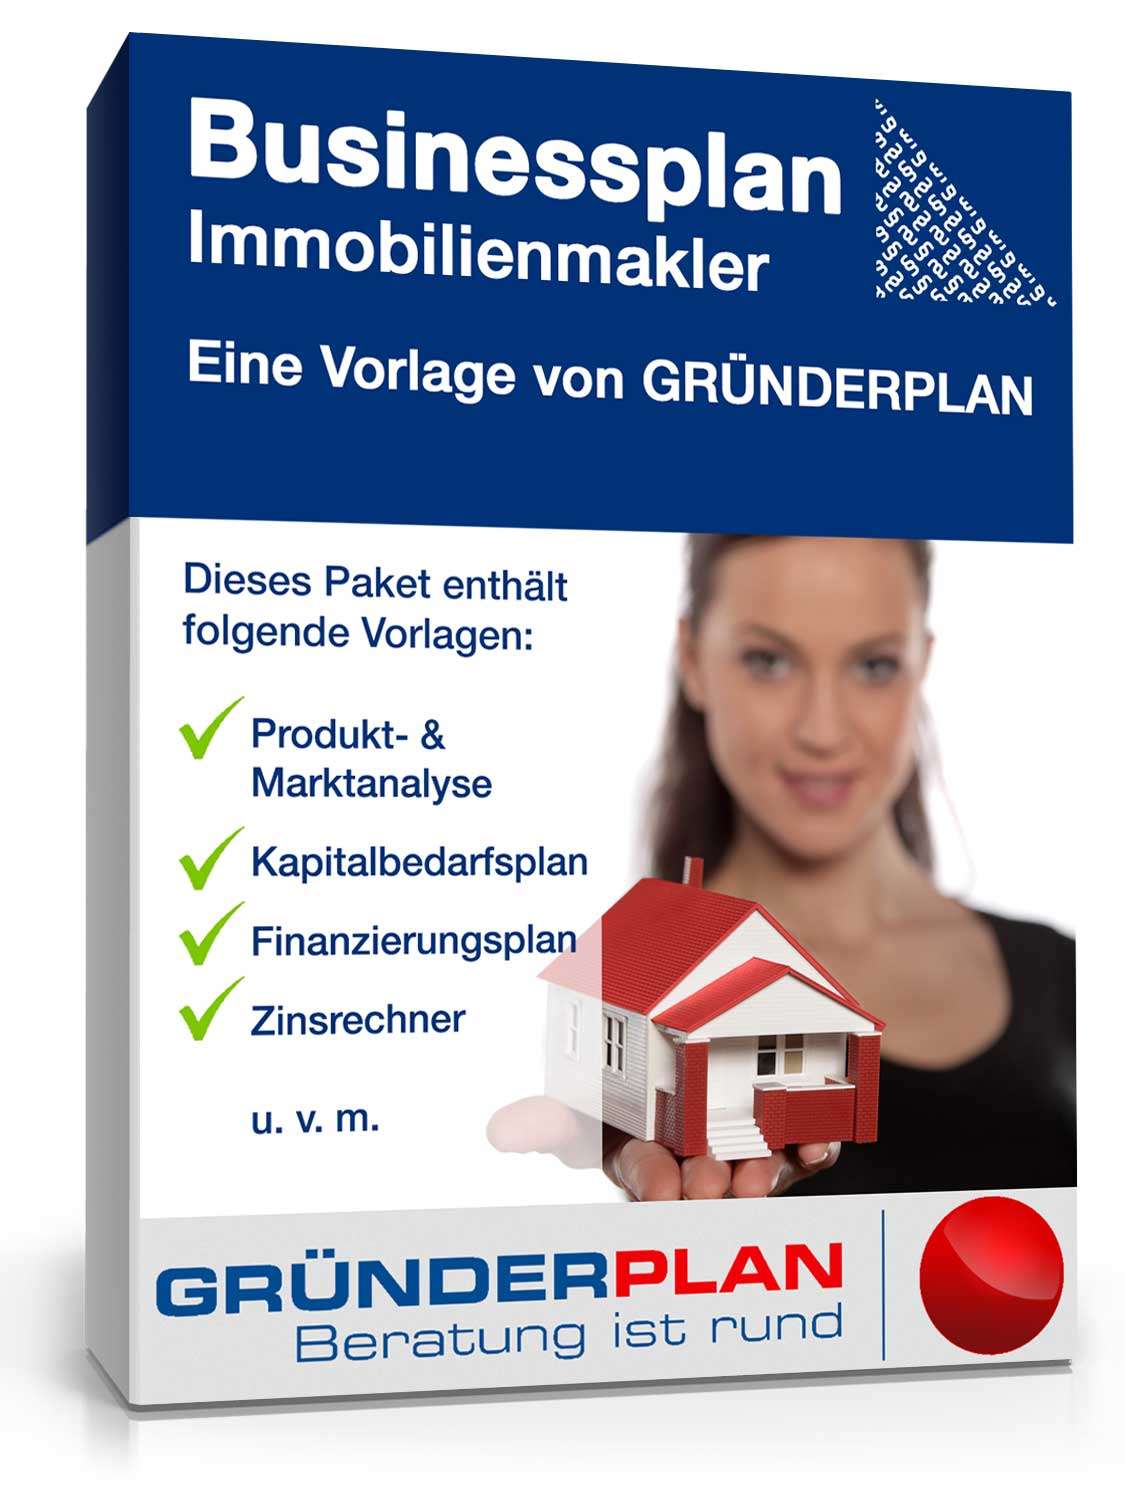 Hauptbild des Produkts: Businessplan Immobilienmakler von Gründerplan